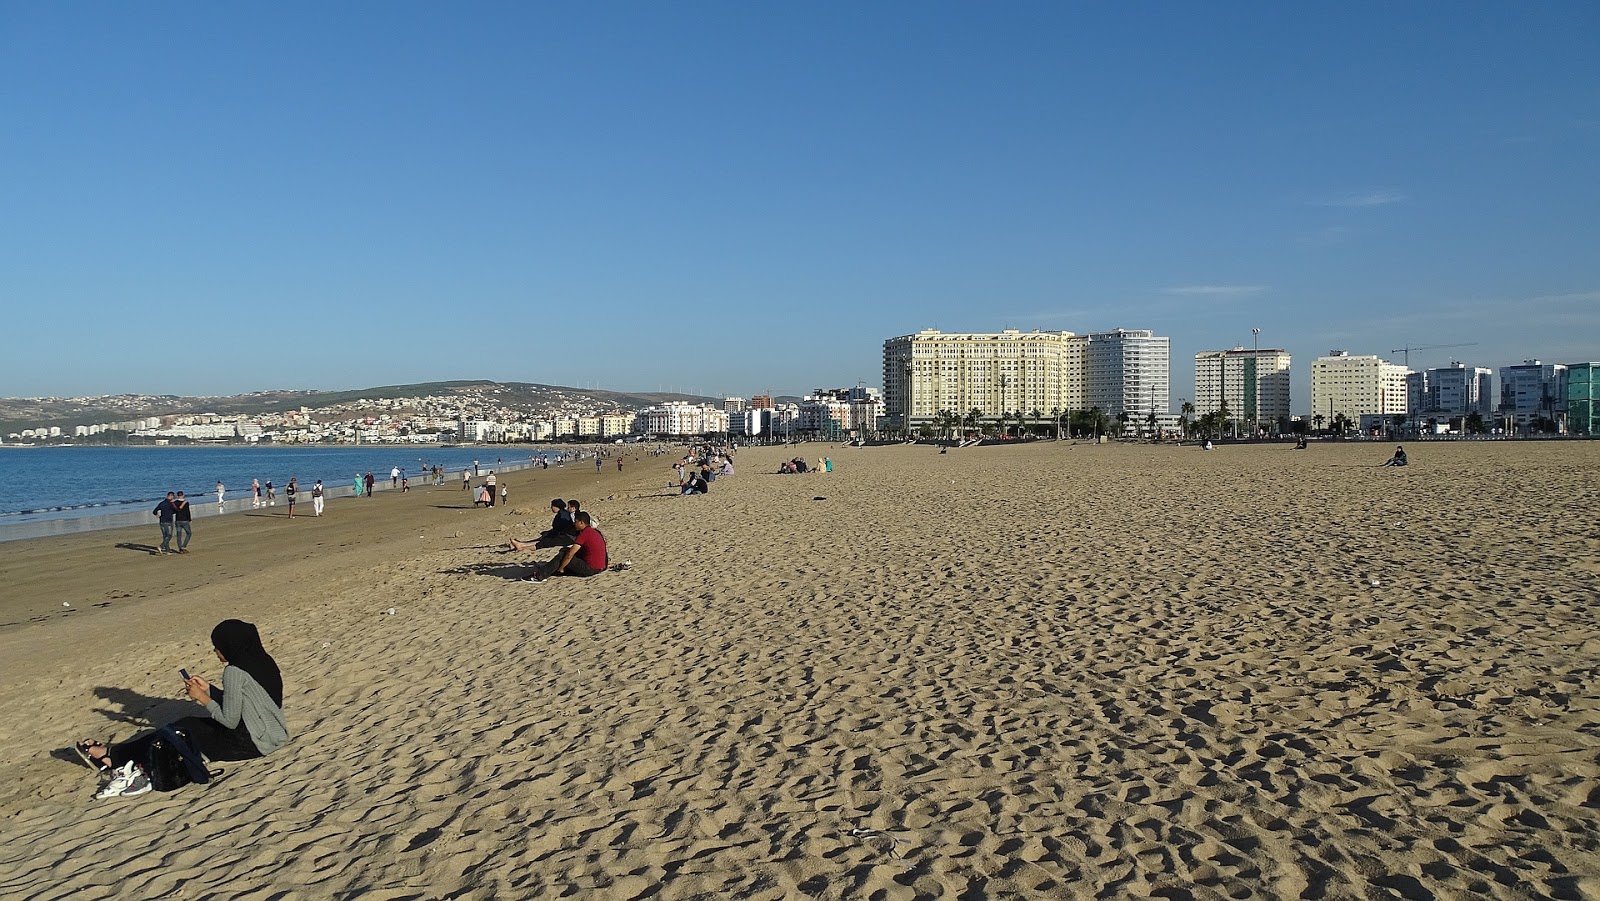 Malabata Plajı (Tangier)'in fotoğrafı parlak kum yüzey ile